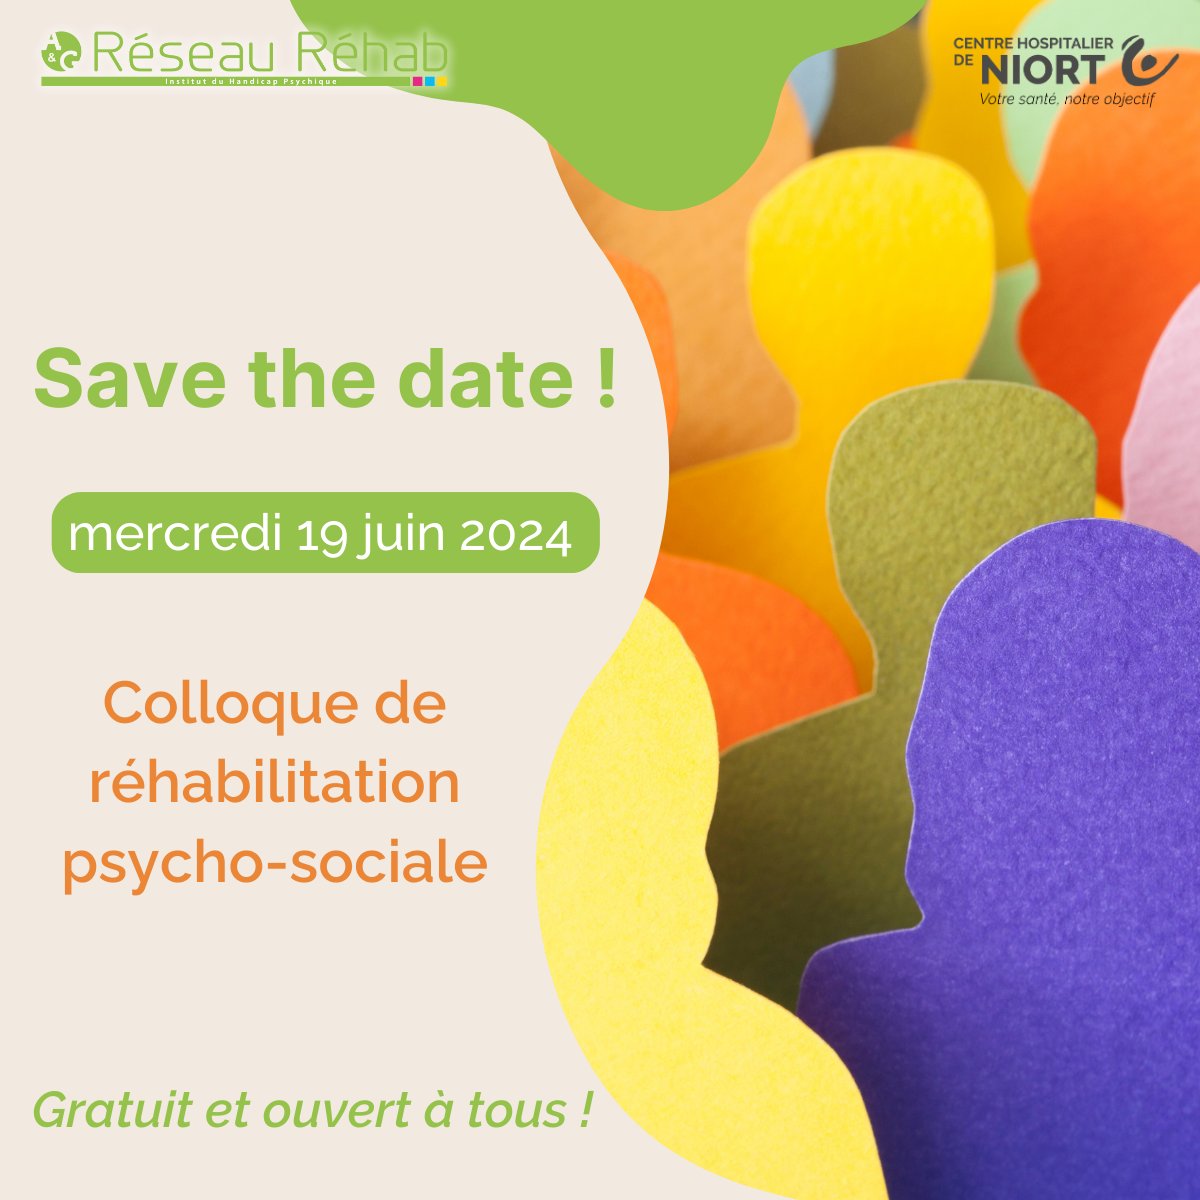 [ÉVÈNEMENT 📅] Le programme du colloque sur la #réhabilitation psycho-sociale organisé par le Réseau Réhab, mercredi 19 juin, est disponible ! Consultez-le ici 👉 swll.to/x16hin #SantéMentale #Niort